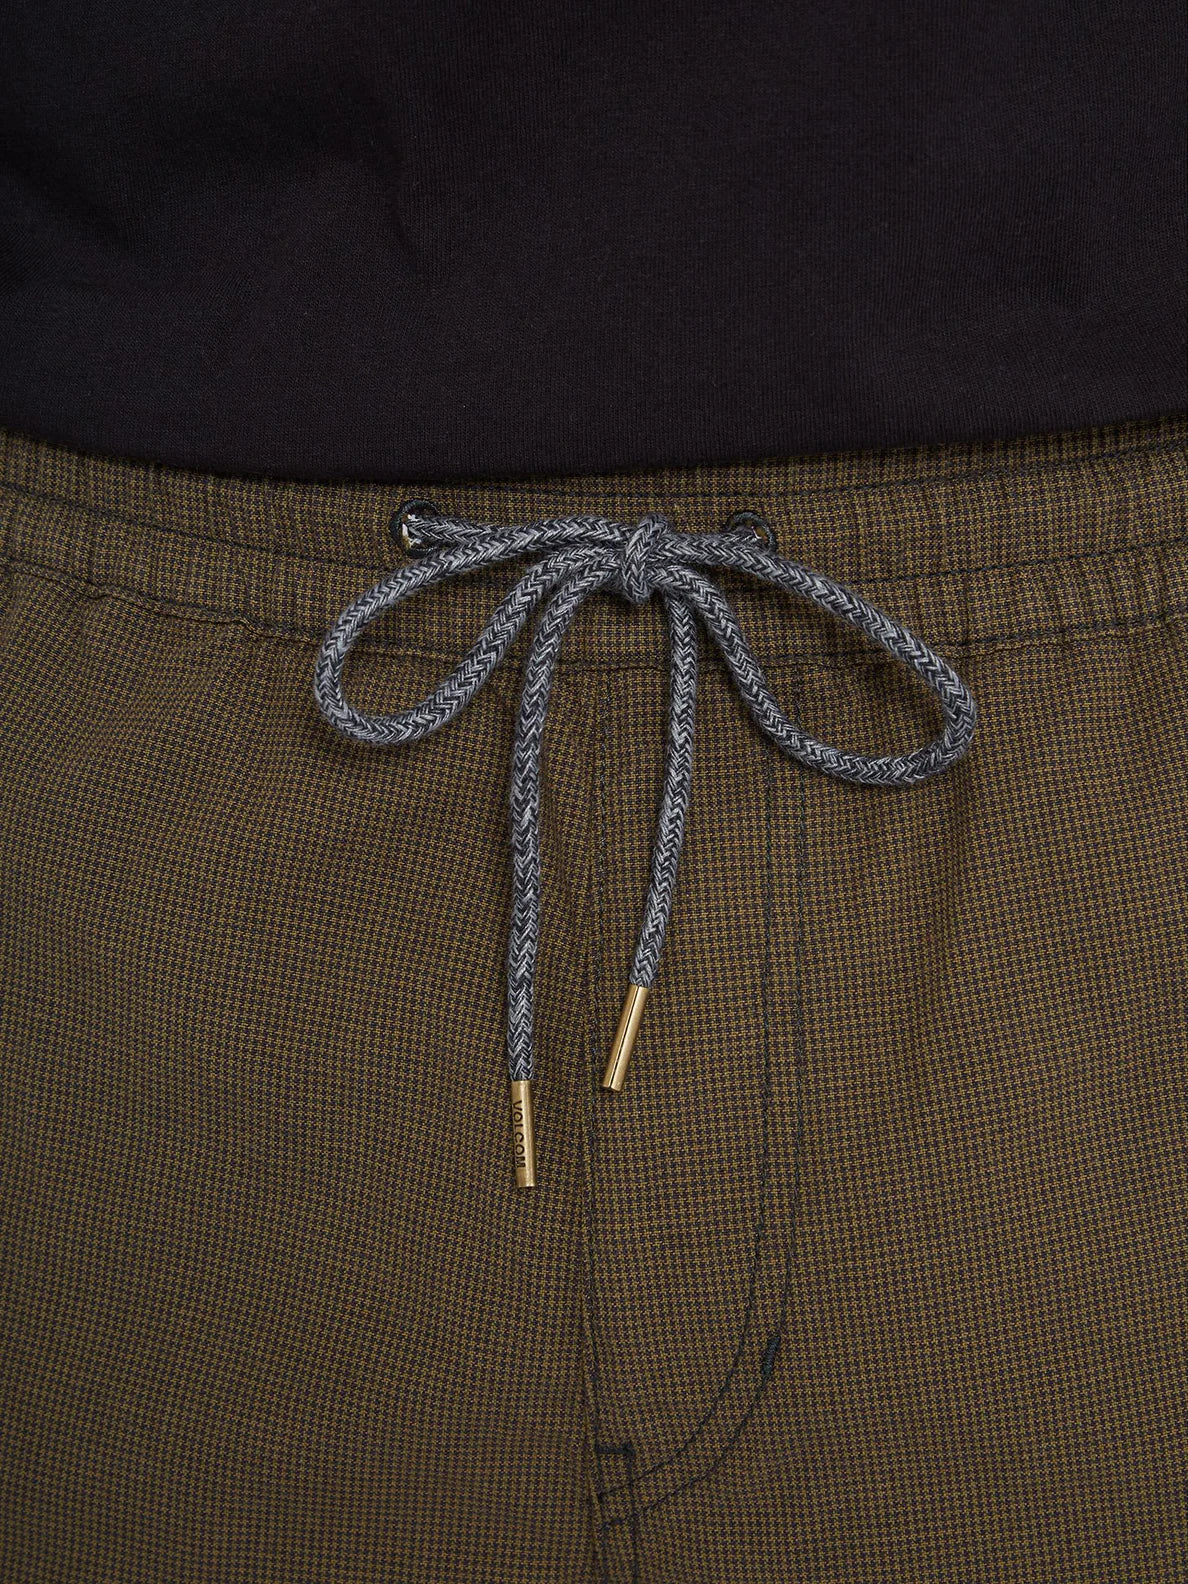 Pantalon Corto Volcom Frickin Mix 19" Military | Pantalones cortos de Hombre | Todos los pantalones de hombre | Volcom Shop | surfdevils.com